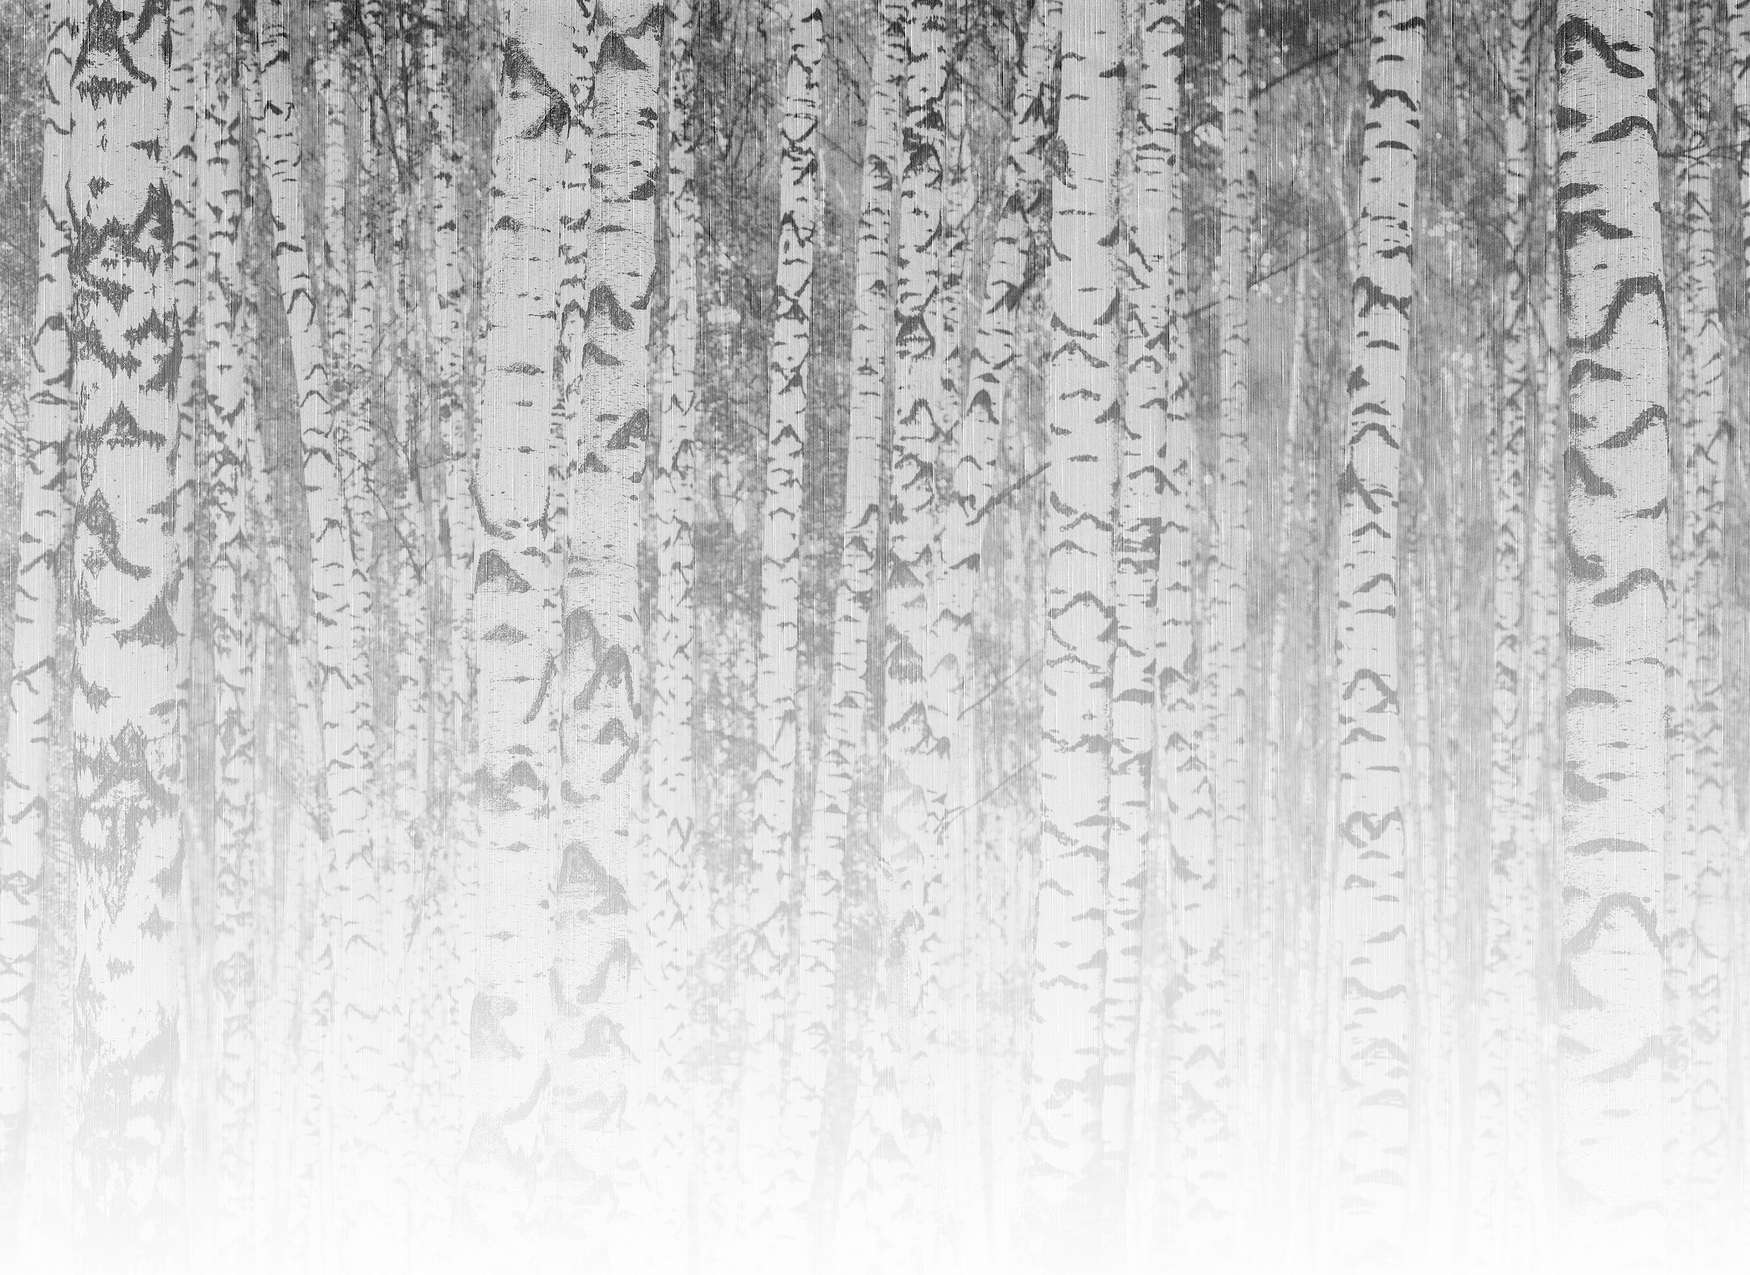             Fotomurali tronchi di betulla chiari in una foresta nebbiosa - bianco e nero
        